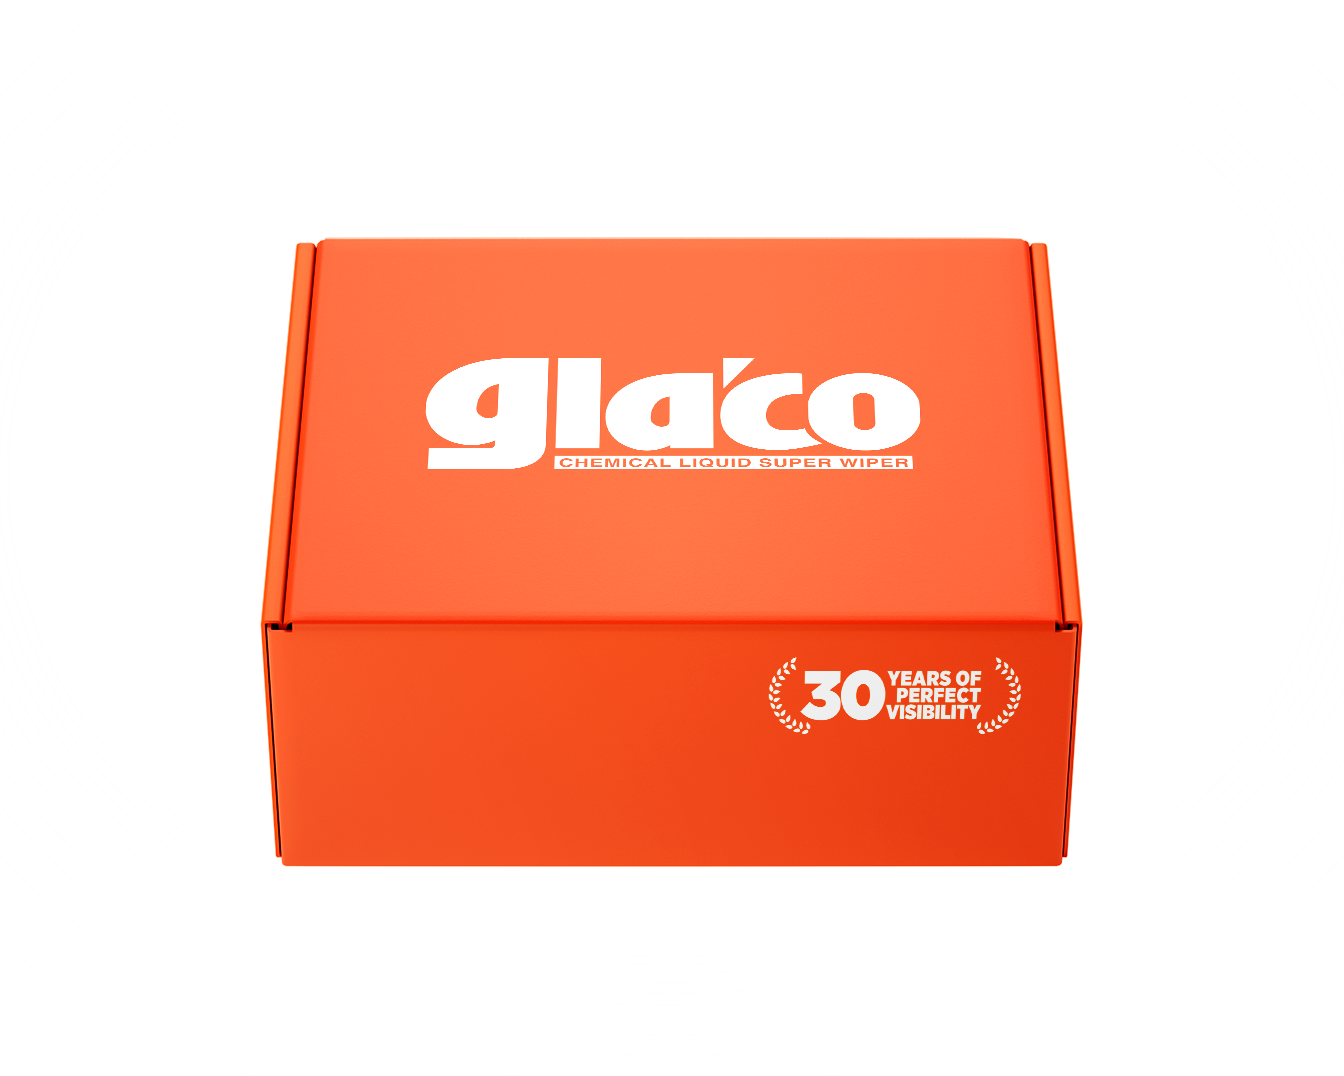 Ultra Glaco – SOFT99 Australia